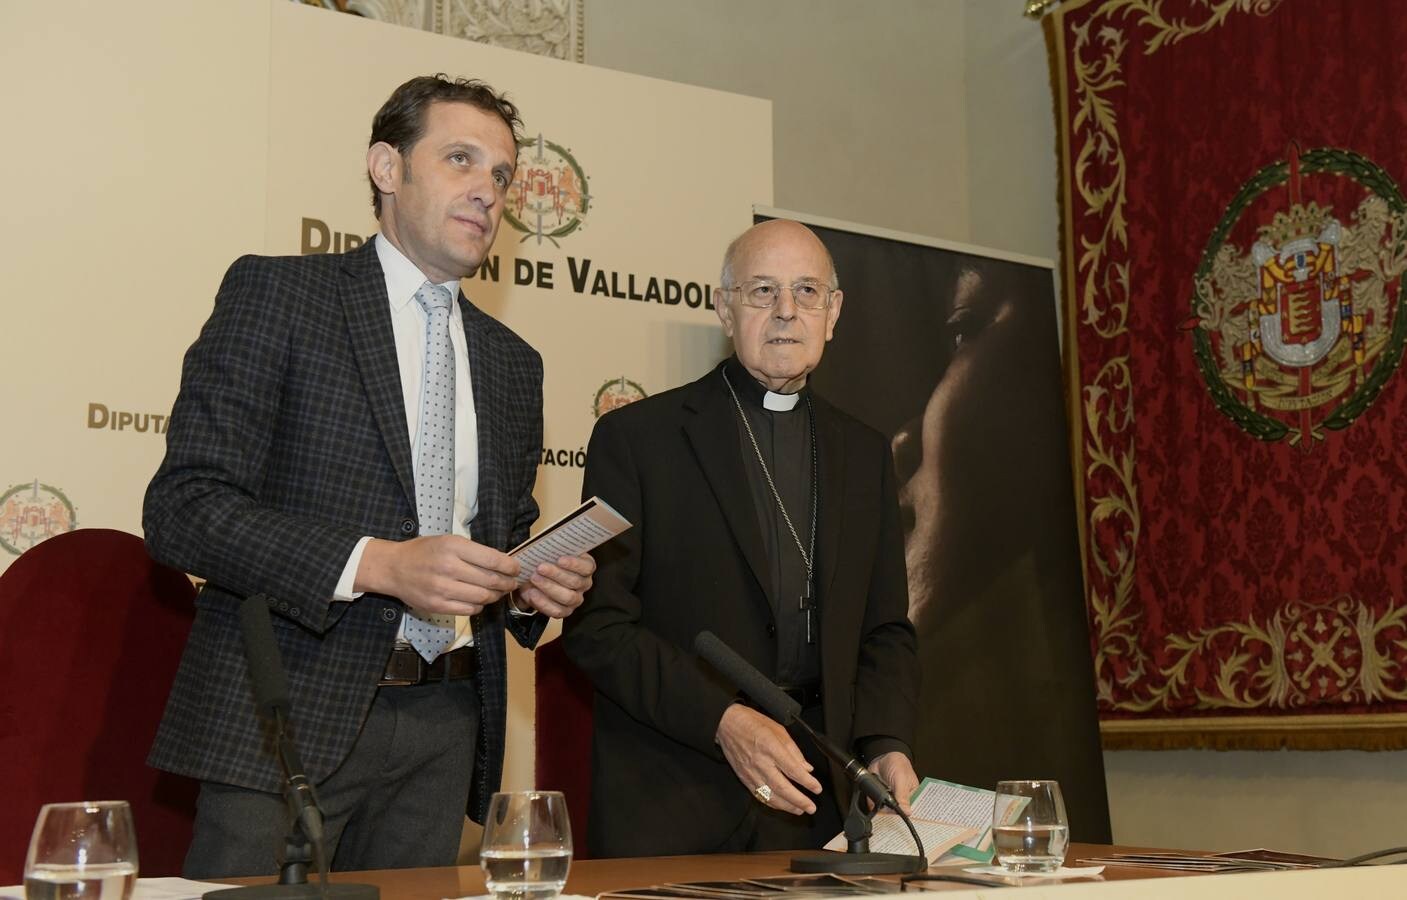 El presidente de la Diputación, Conrado Íscar, y el arzobispo de Valladolid, Ricardo Blázquez, presentan la muestra